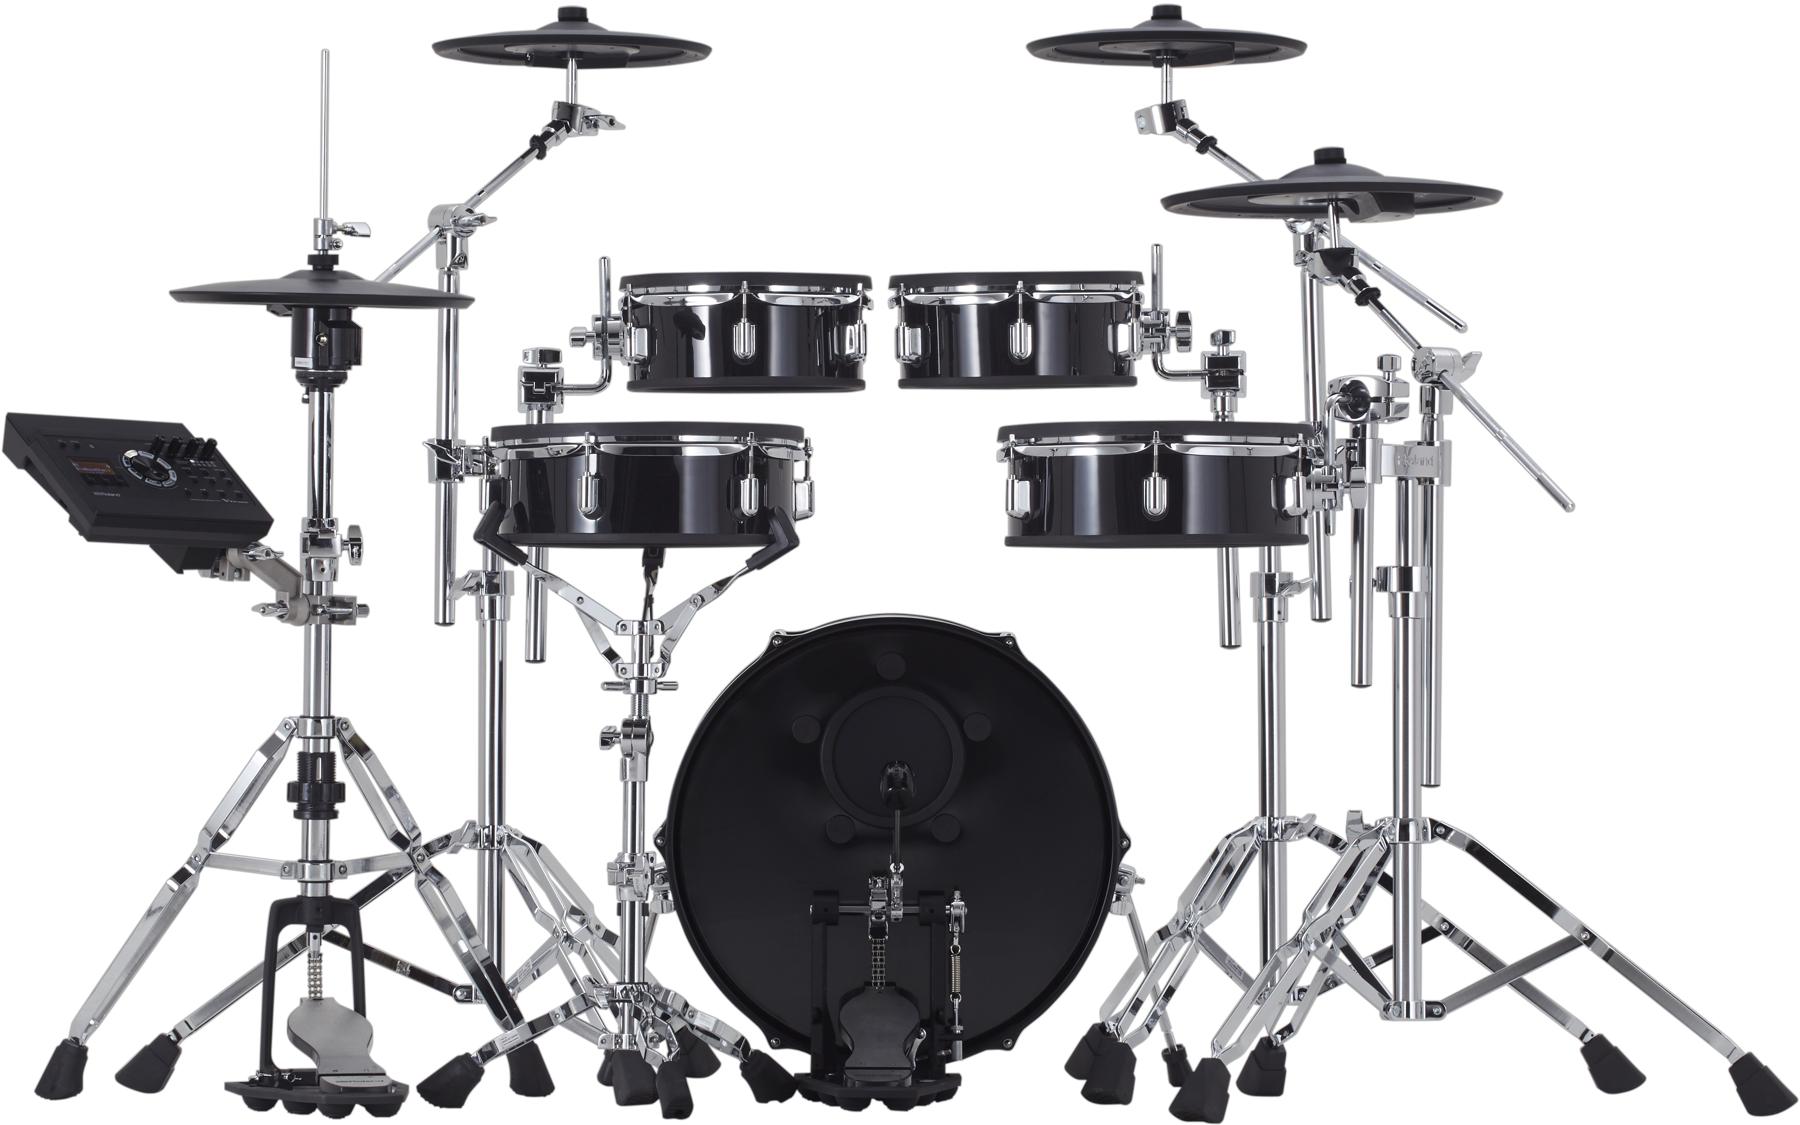 Roland V-Drums Acoustic Design VAD307 Electronic Drum Set